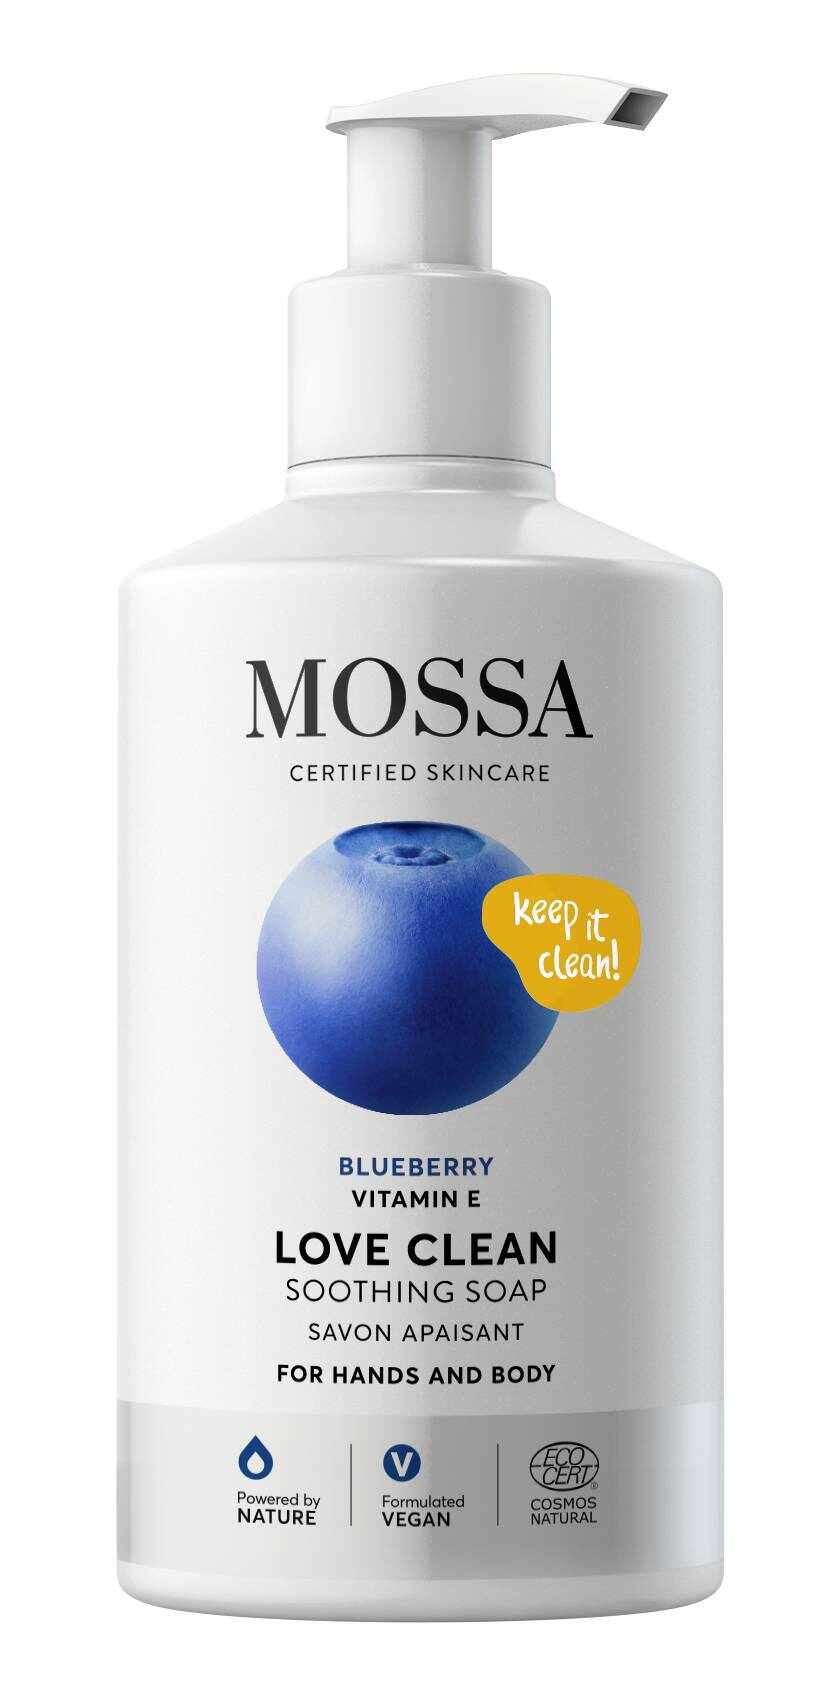 Sapun lichid pentru mAini Si corp, Love Clean, 300ml - Mossa